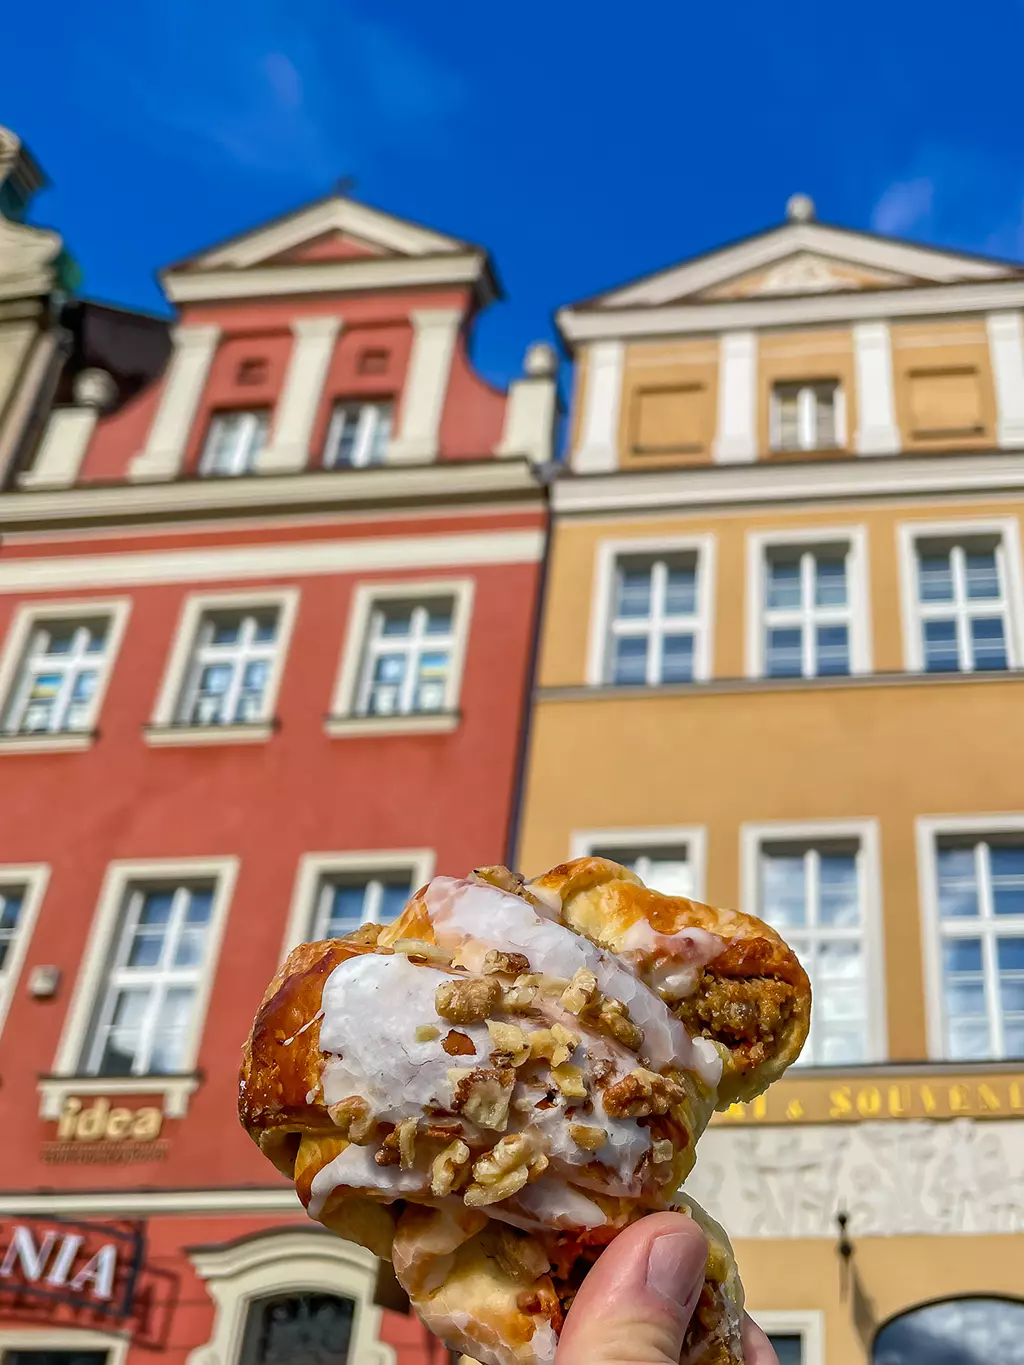 Le croissant de Saint Martin, emblême de la ville de Poznan, mis en valeur devant les maisons colorées de la place du marché de Poznan.